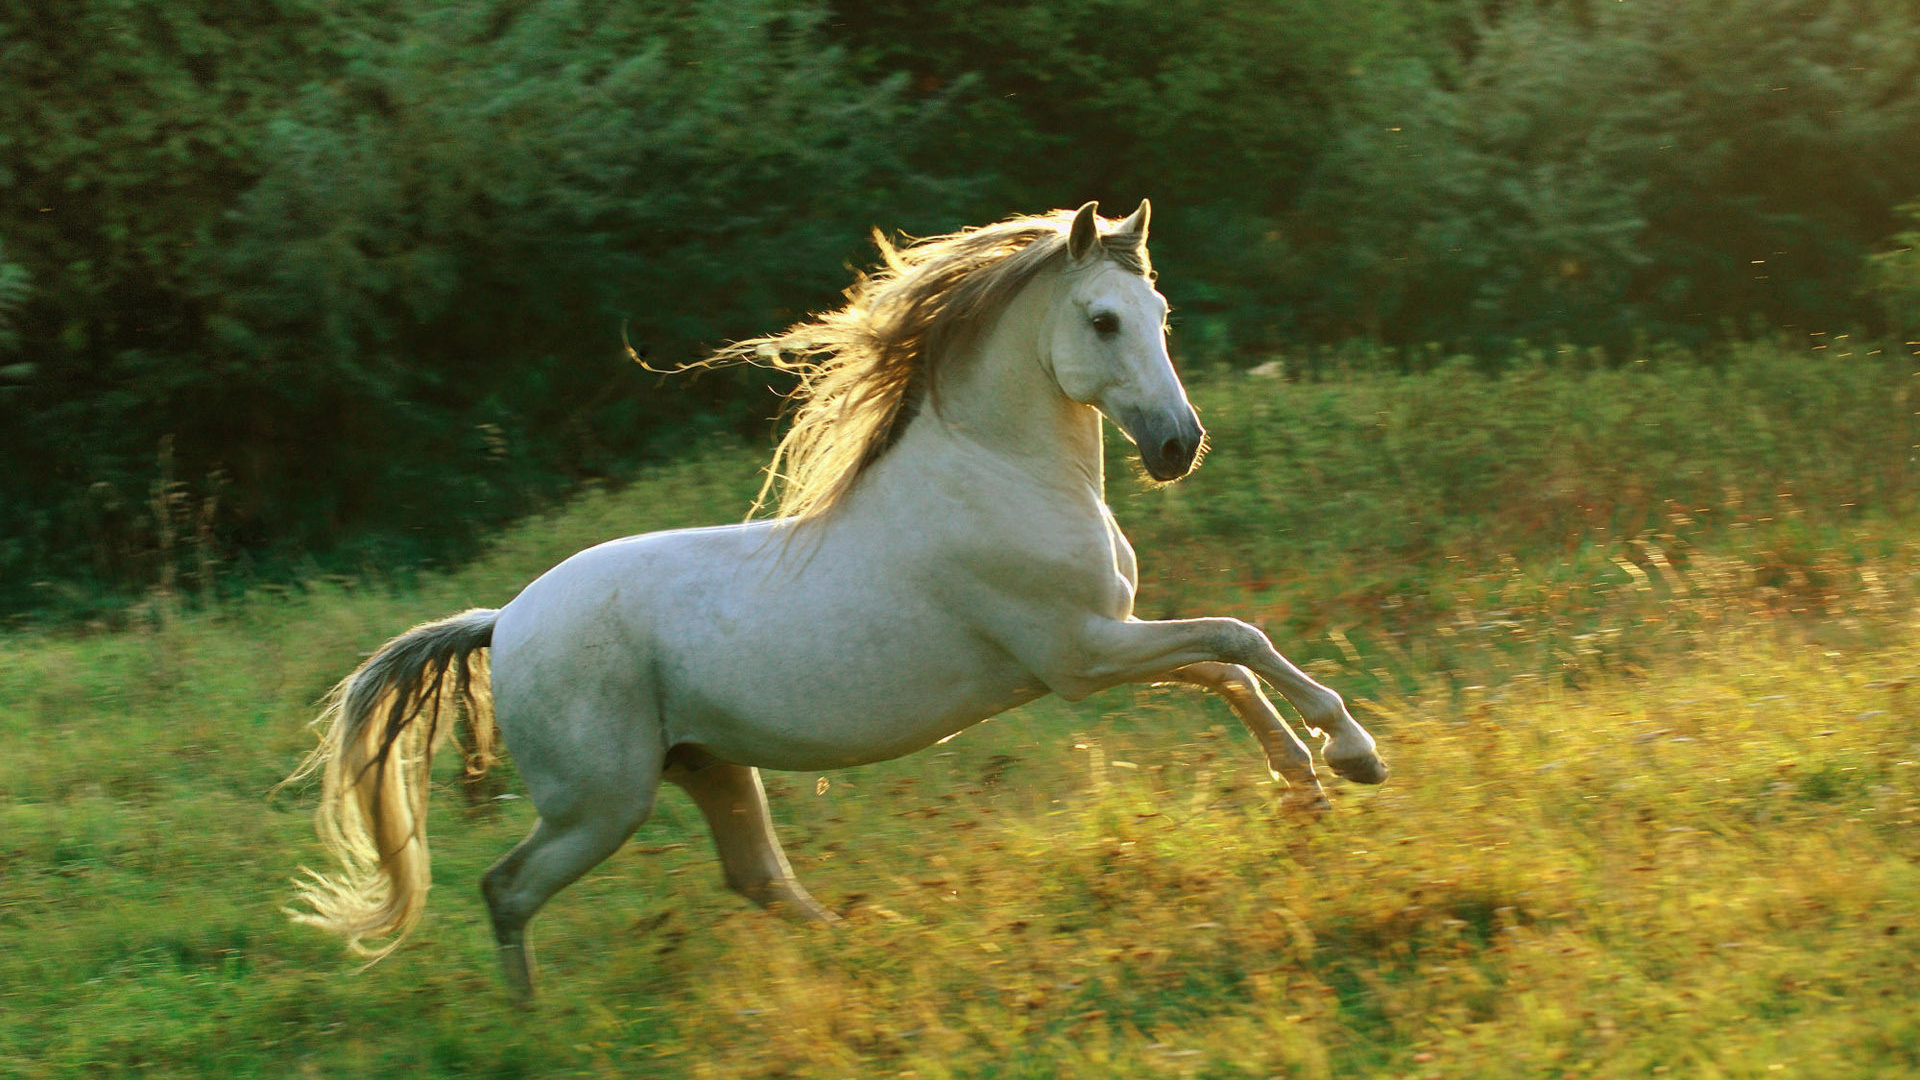 تصویر مخصوص چاپ پوستر از اسب تک تاز سپید رنگ با یال های قشنگ